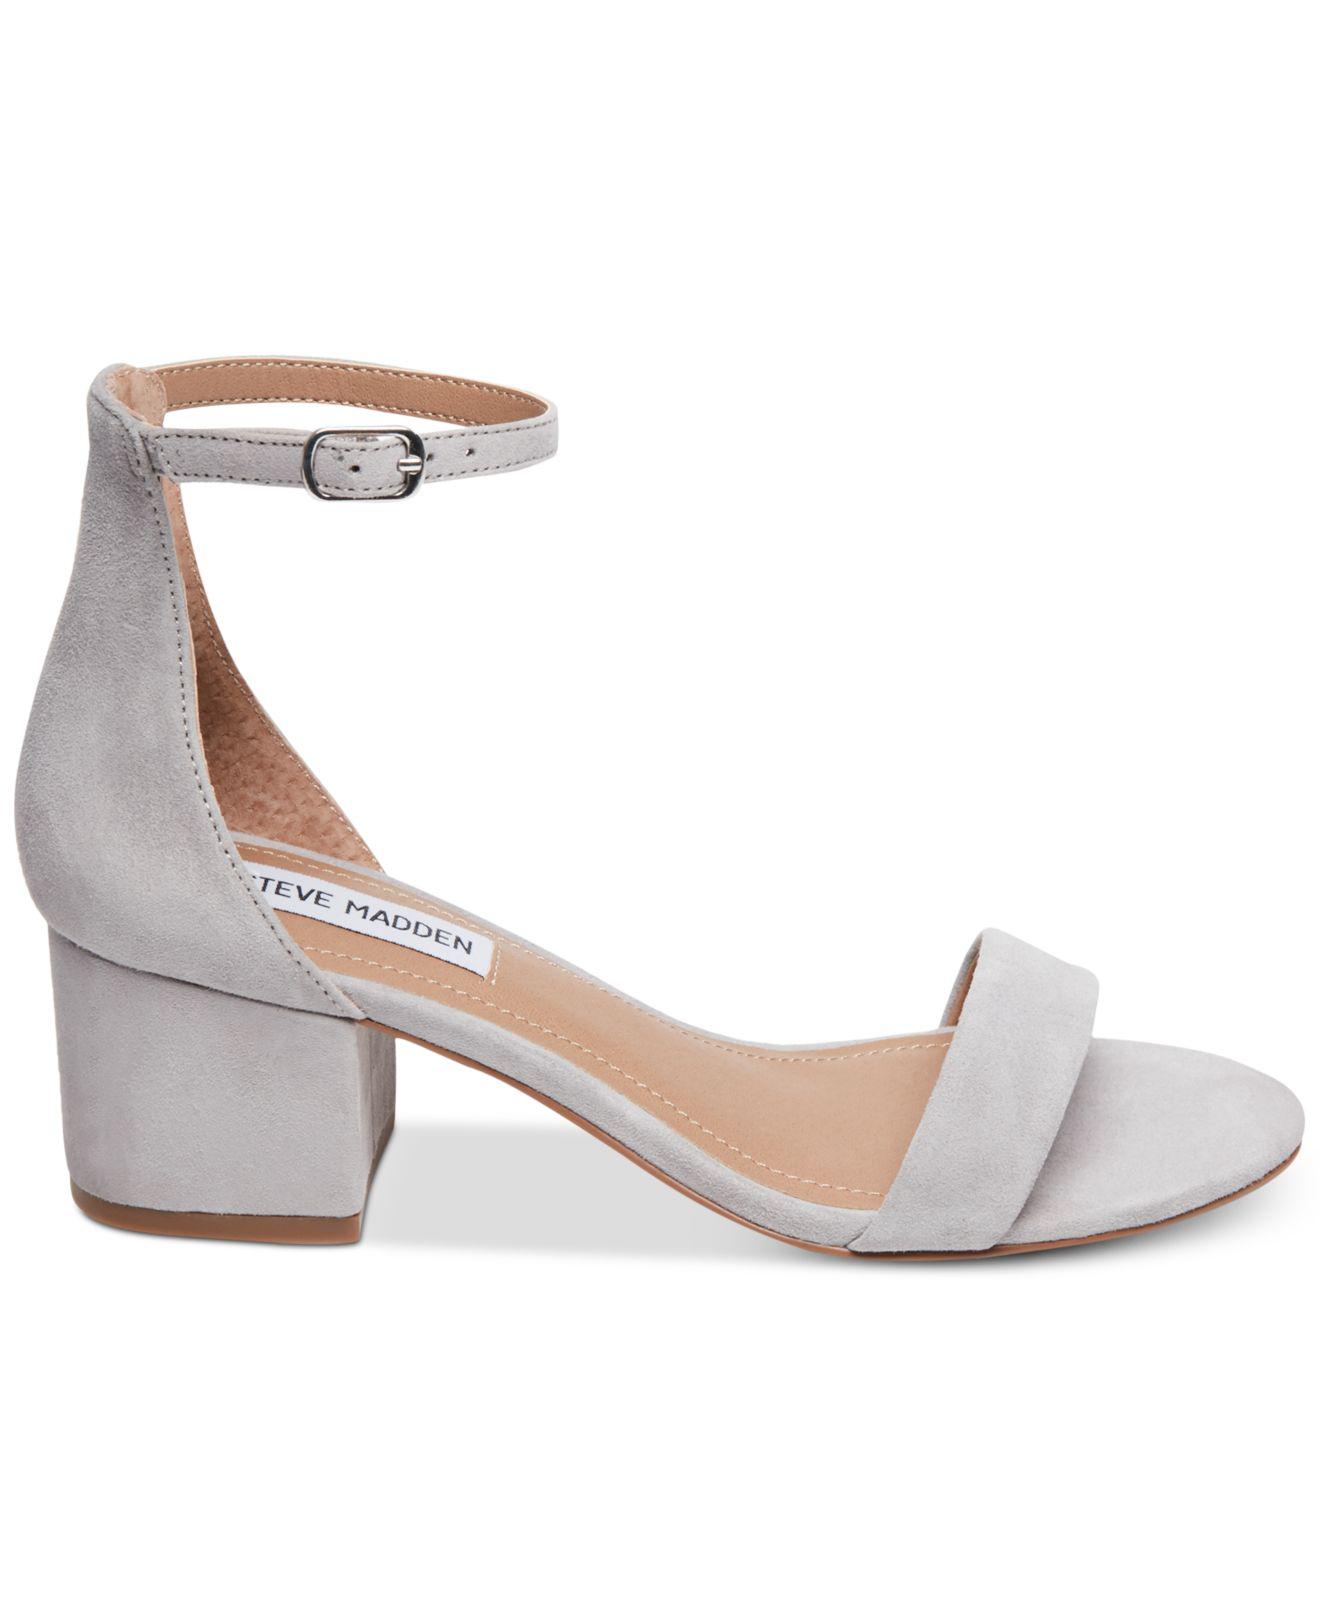 Steve Madden Irenee Two-piece Block-heel Sandals in Gray | Lyst